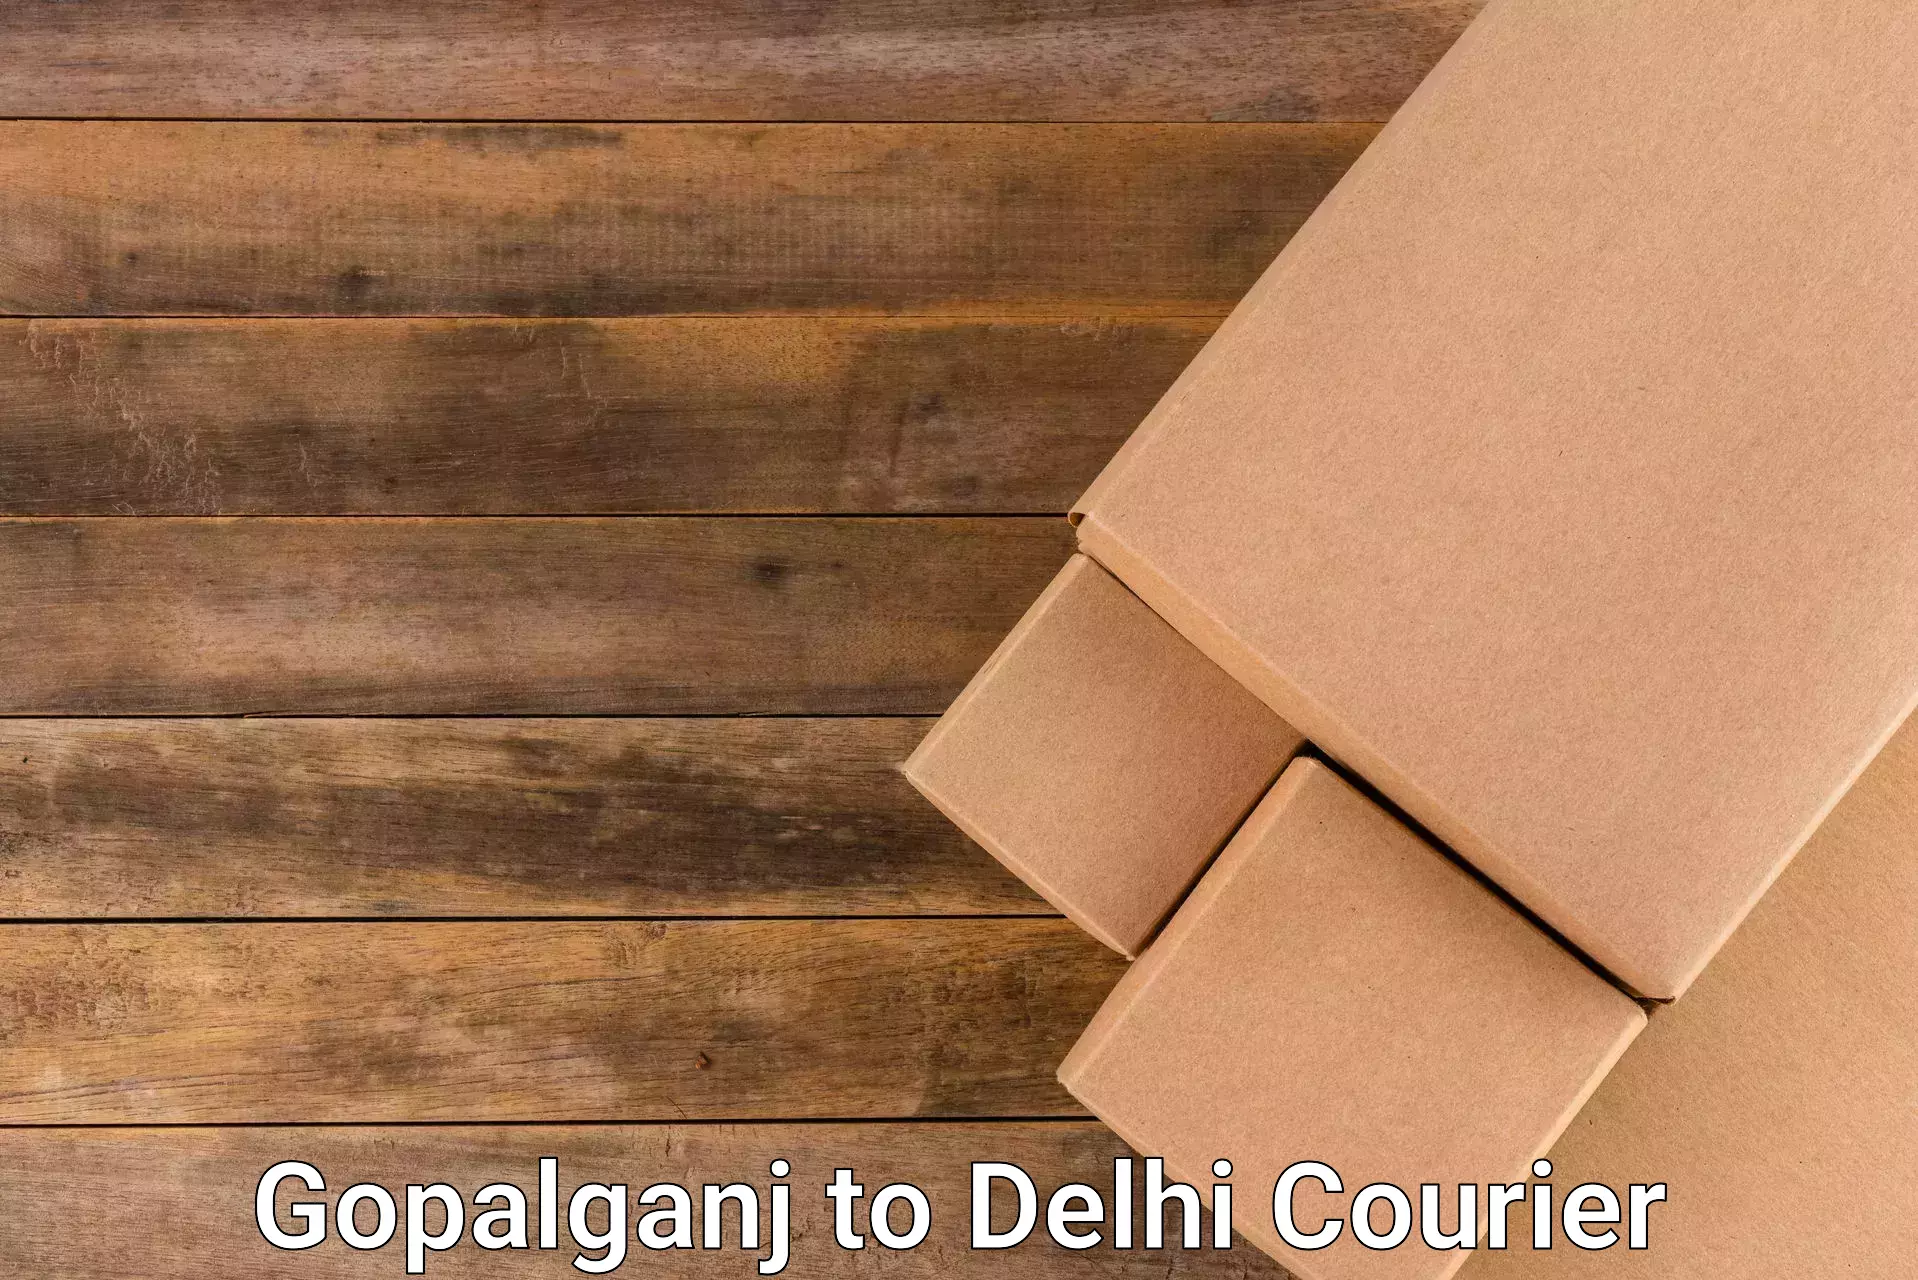 Fast-track shipping solutions Gopalganj to Kalkaji